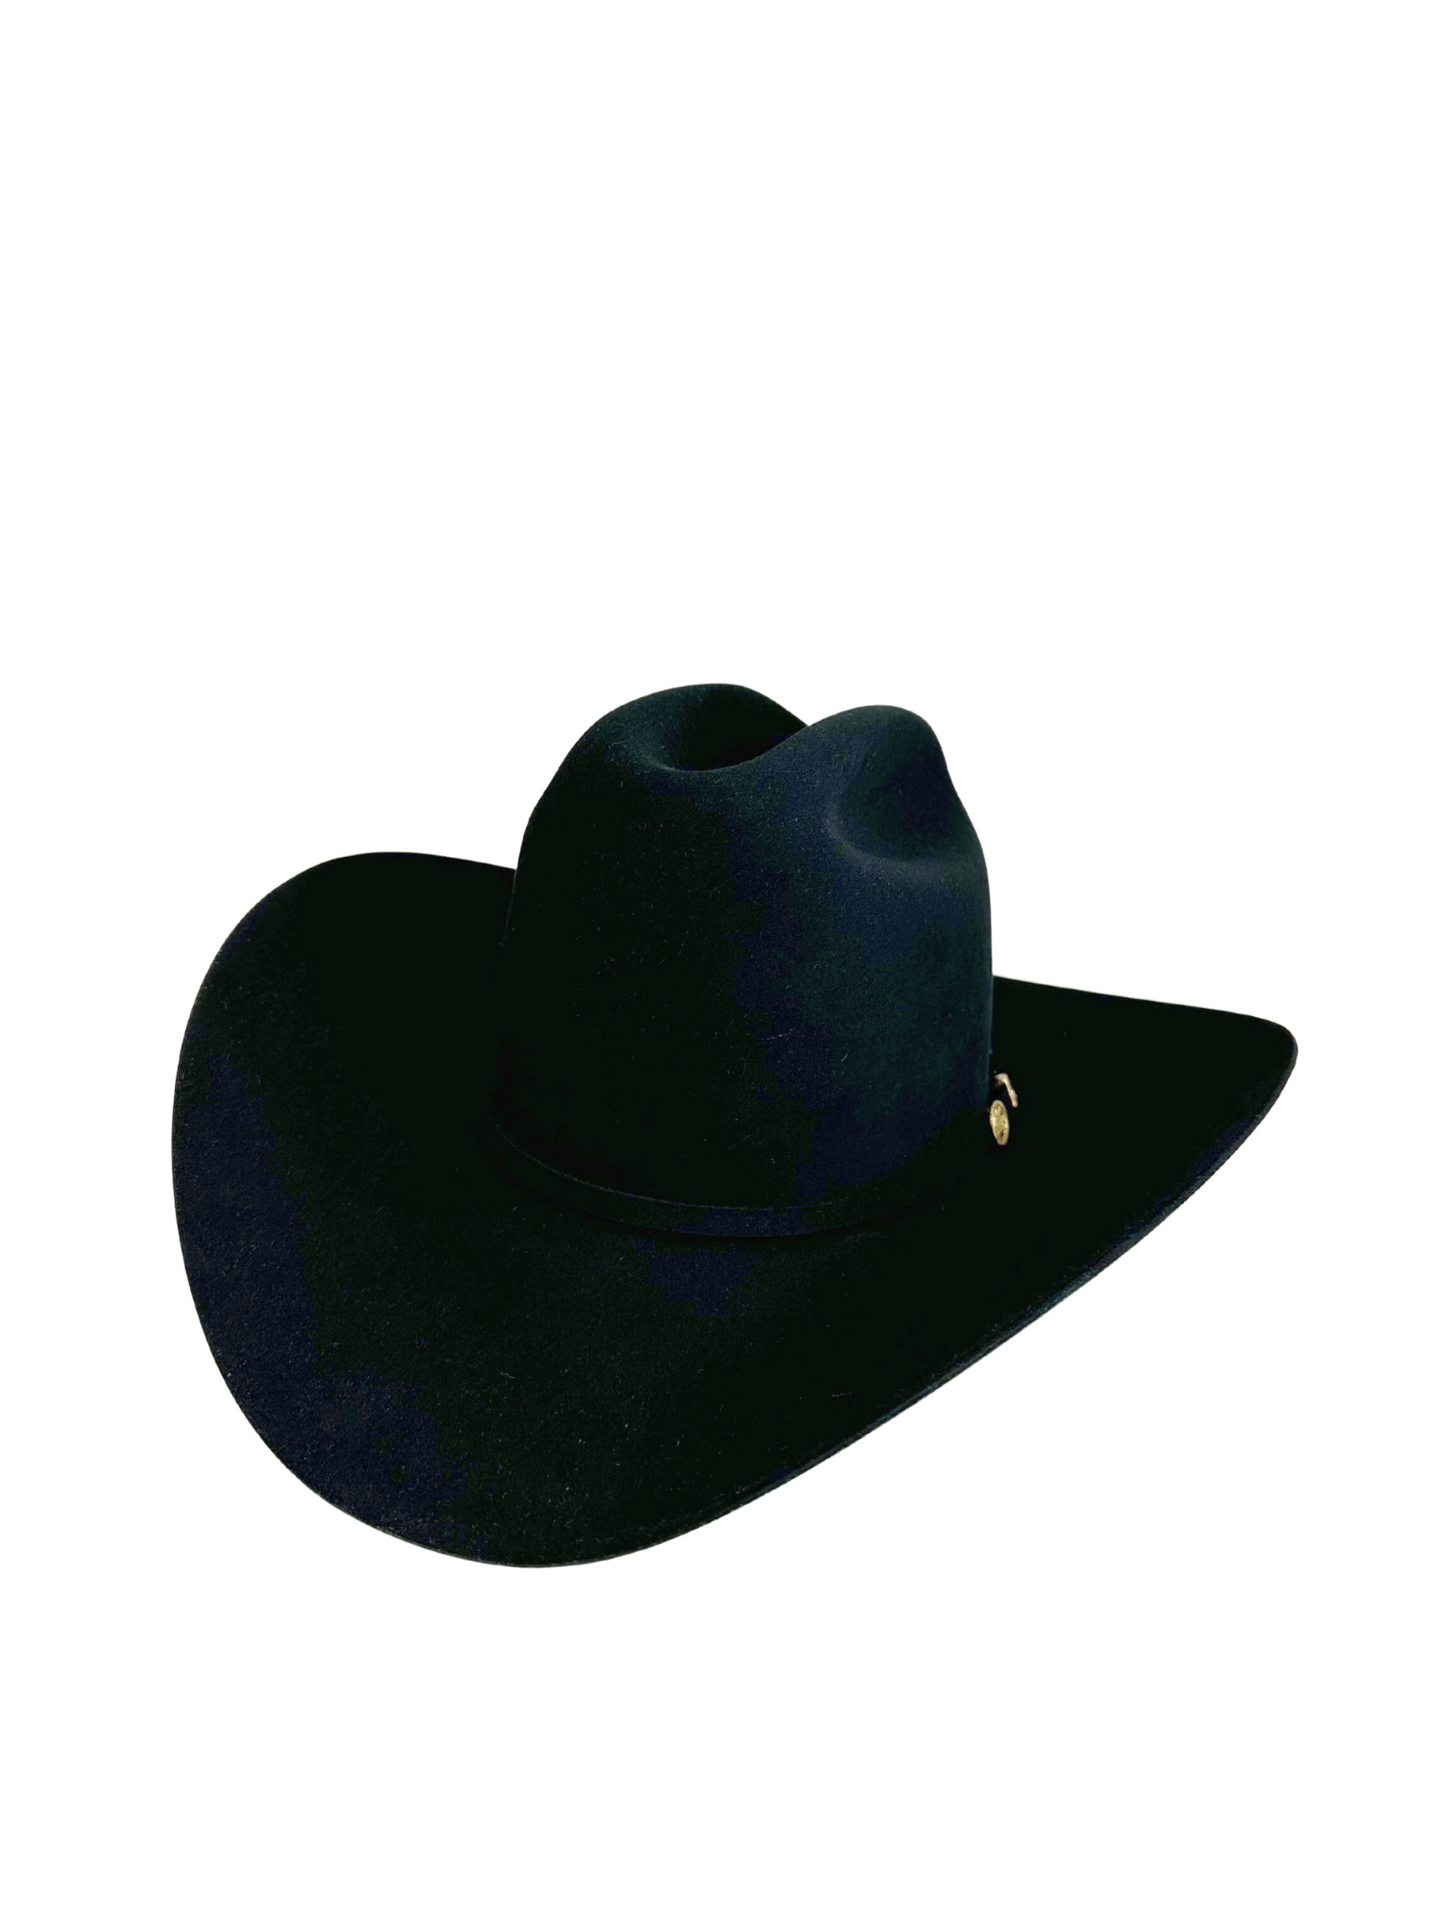 Stetson El Presidente 100X Premier Cowboy Hat - Black